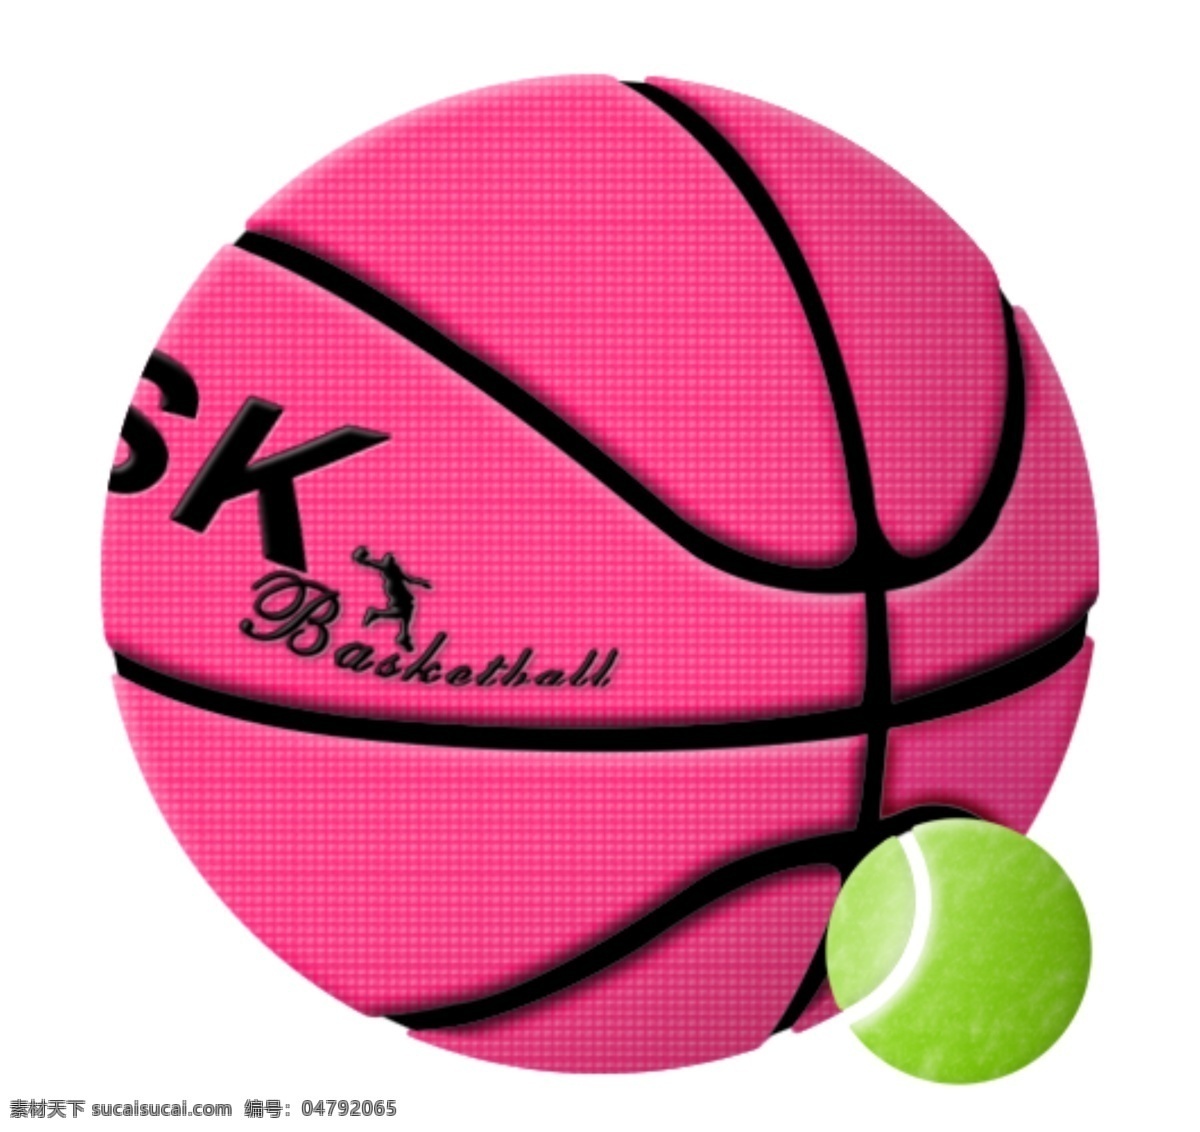 鼠 绘 真实 质感 篮球 网球 鼠绘 真实篮球 真实网球 超质感 psd格式 分层